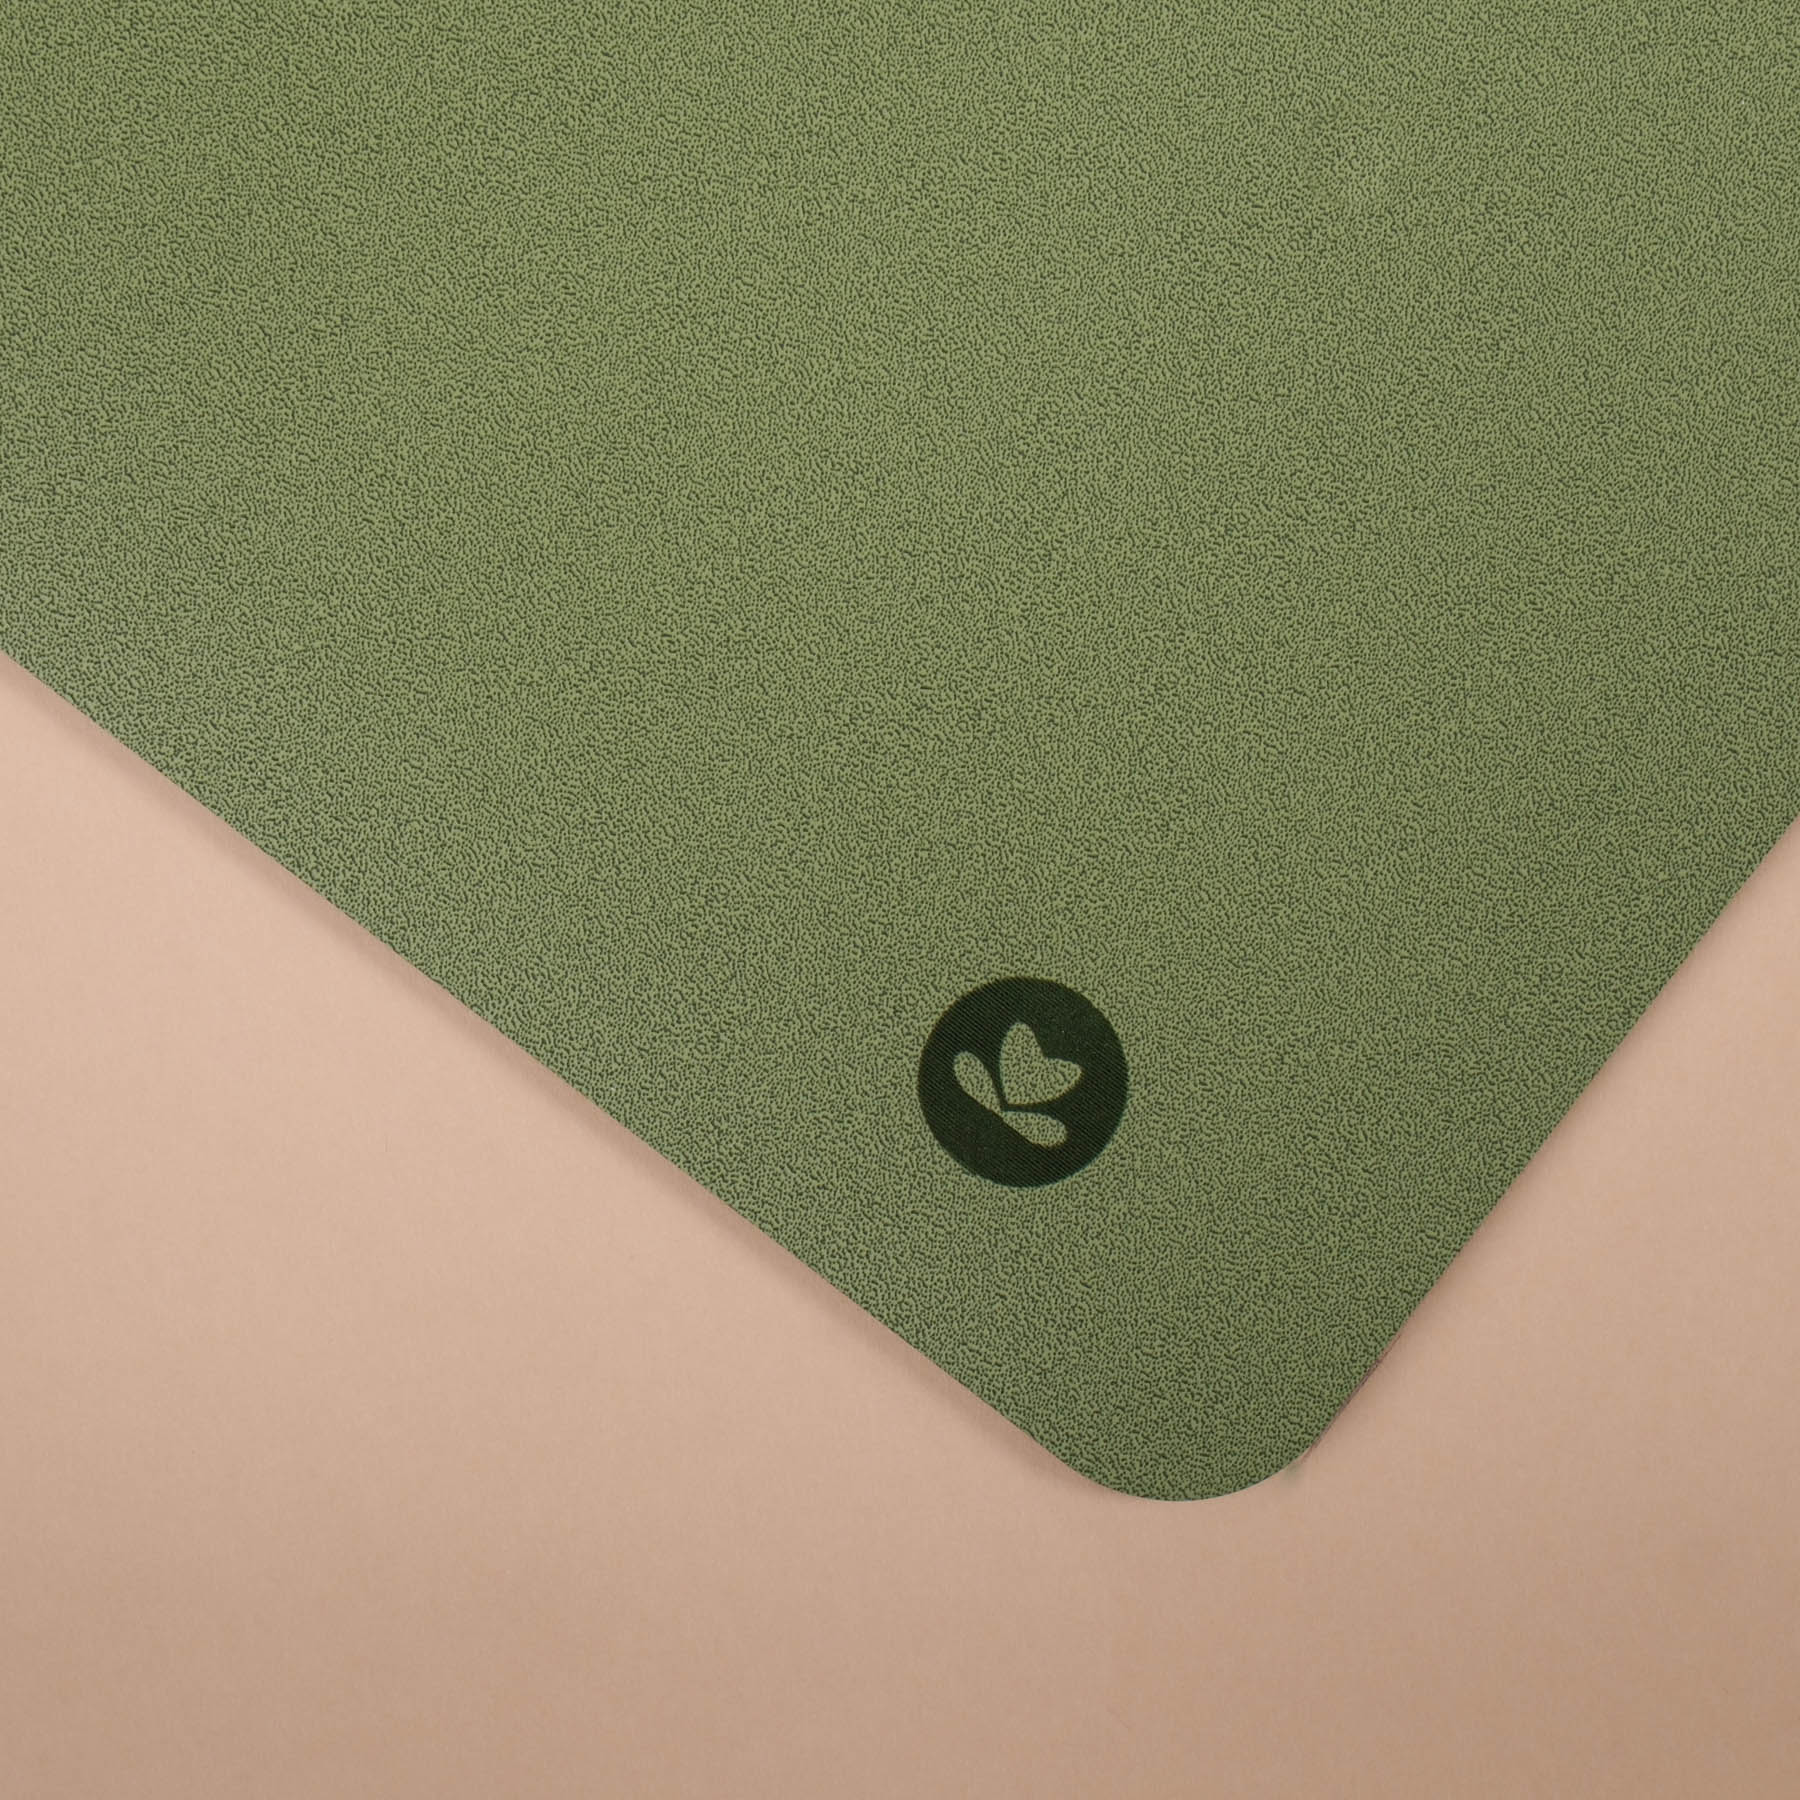 Tapis de yoga SuperGrip très antidérapant en caoutchouc naturel durable de couleur apple